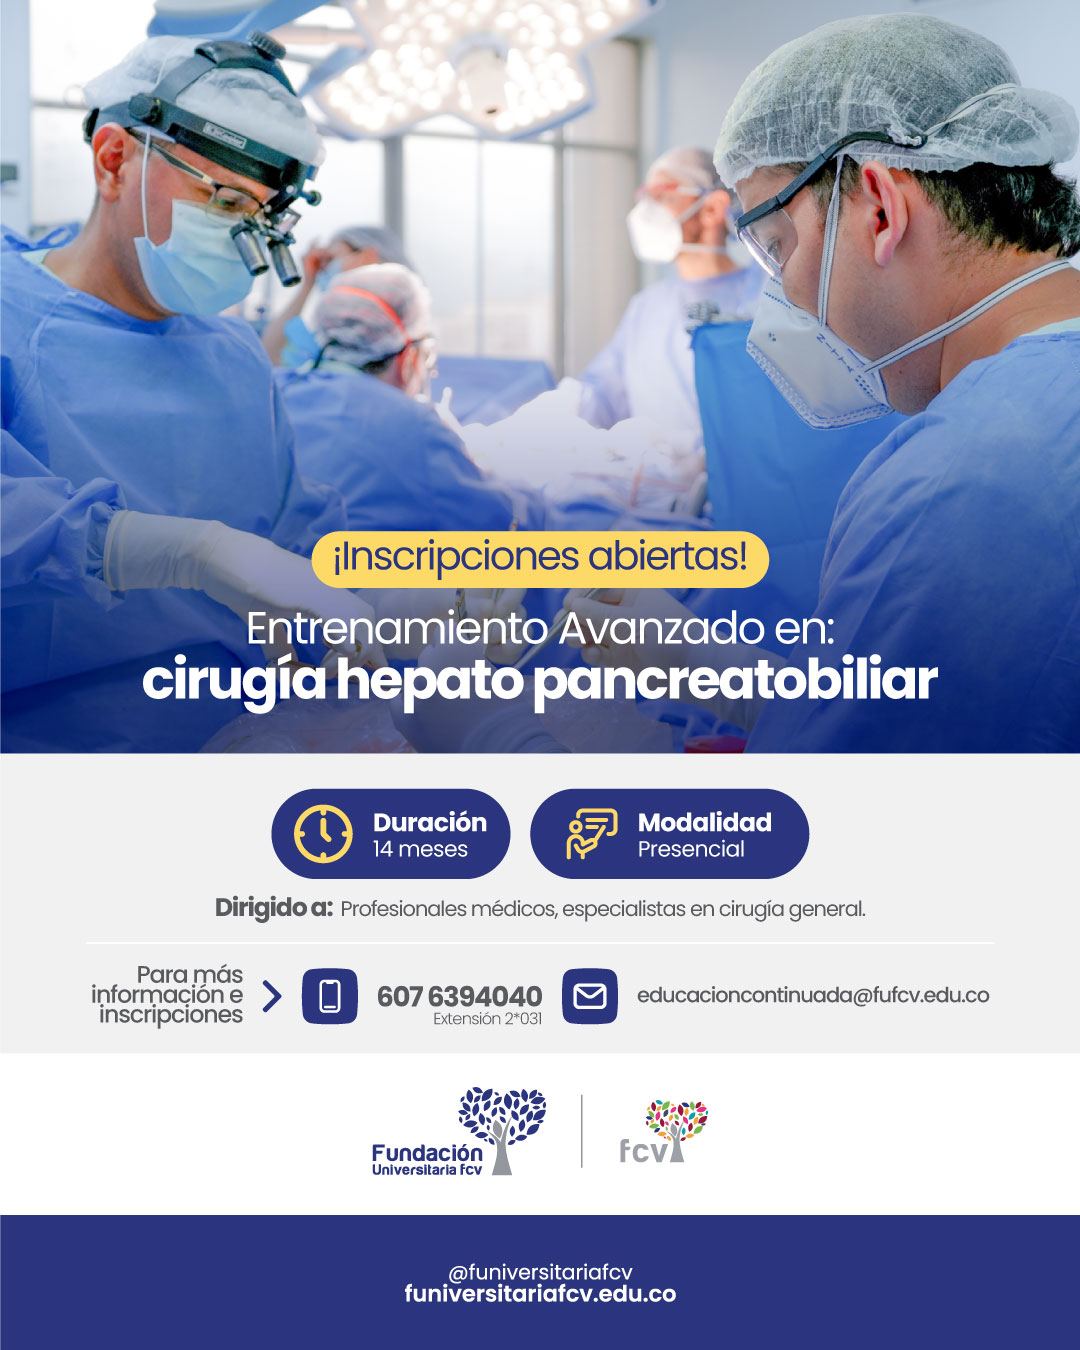 Entrenamiento Avanzado en cirugía hepato pancreatobiliar